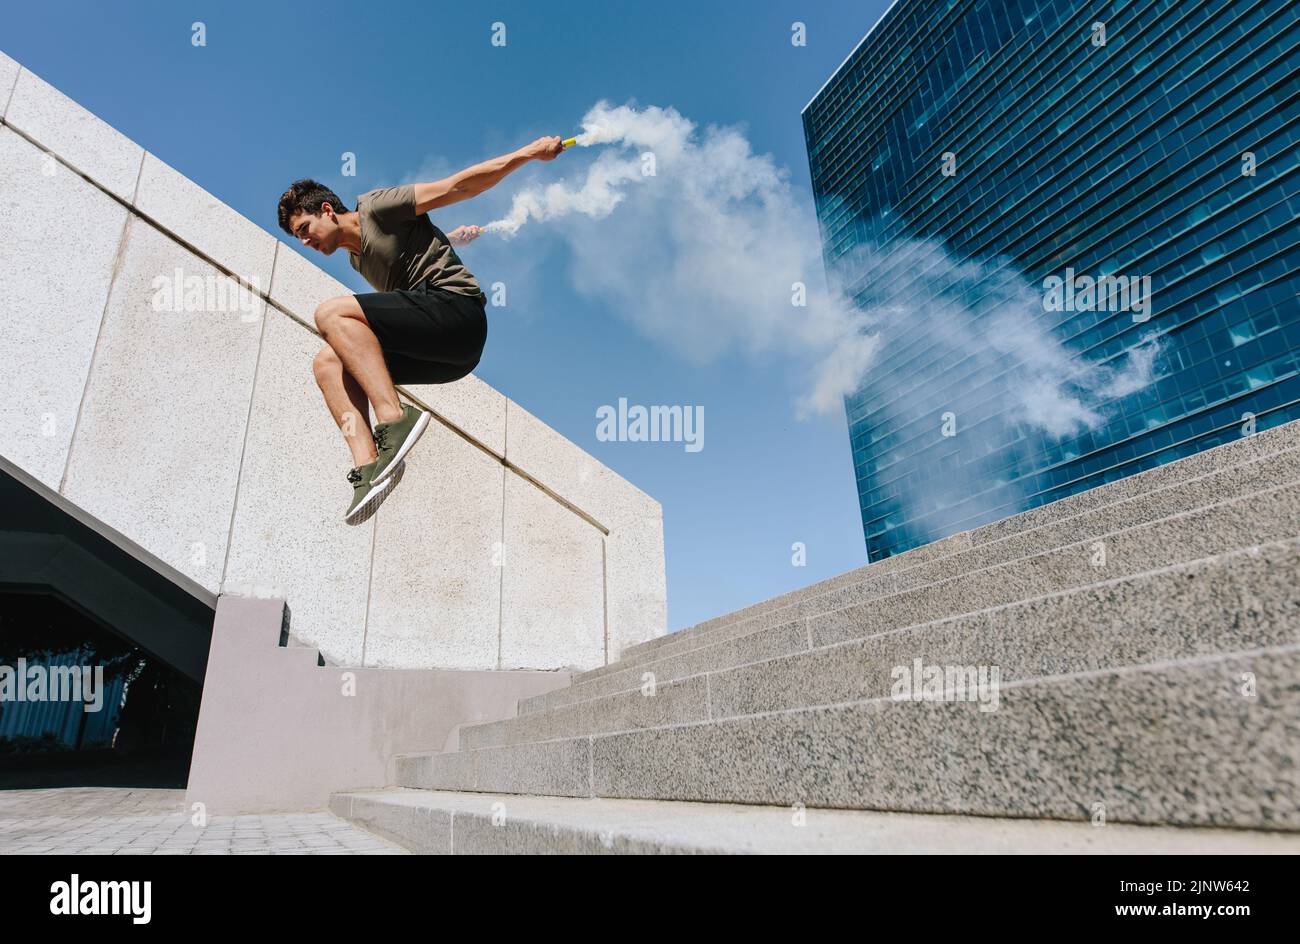 Jeune homme sautant à l'extérieur avec des grenades de fumée. Chemin libre sautant sur quelques marches dans un espace urbain. Banque D'Images